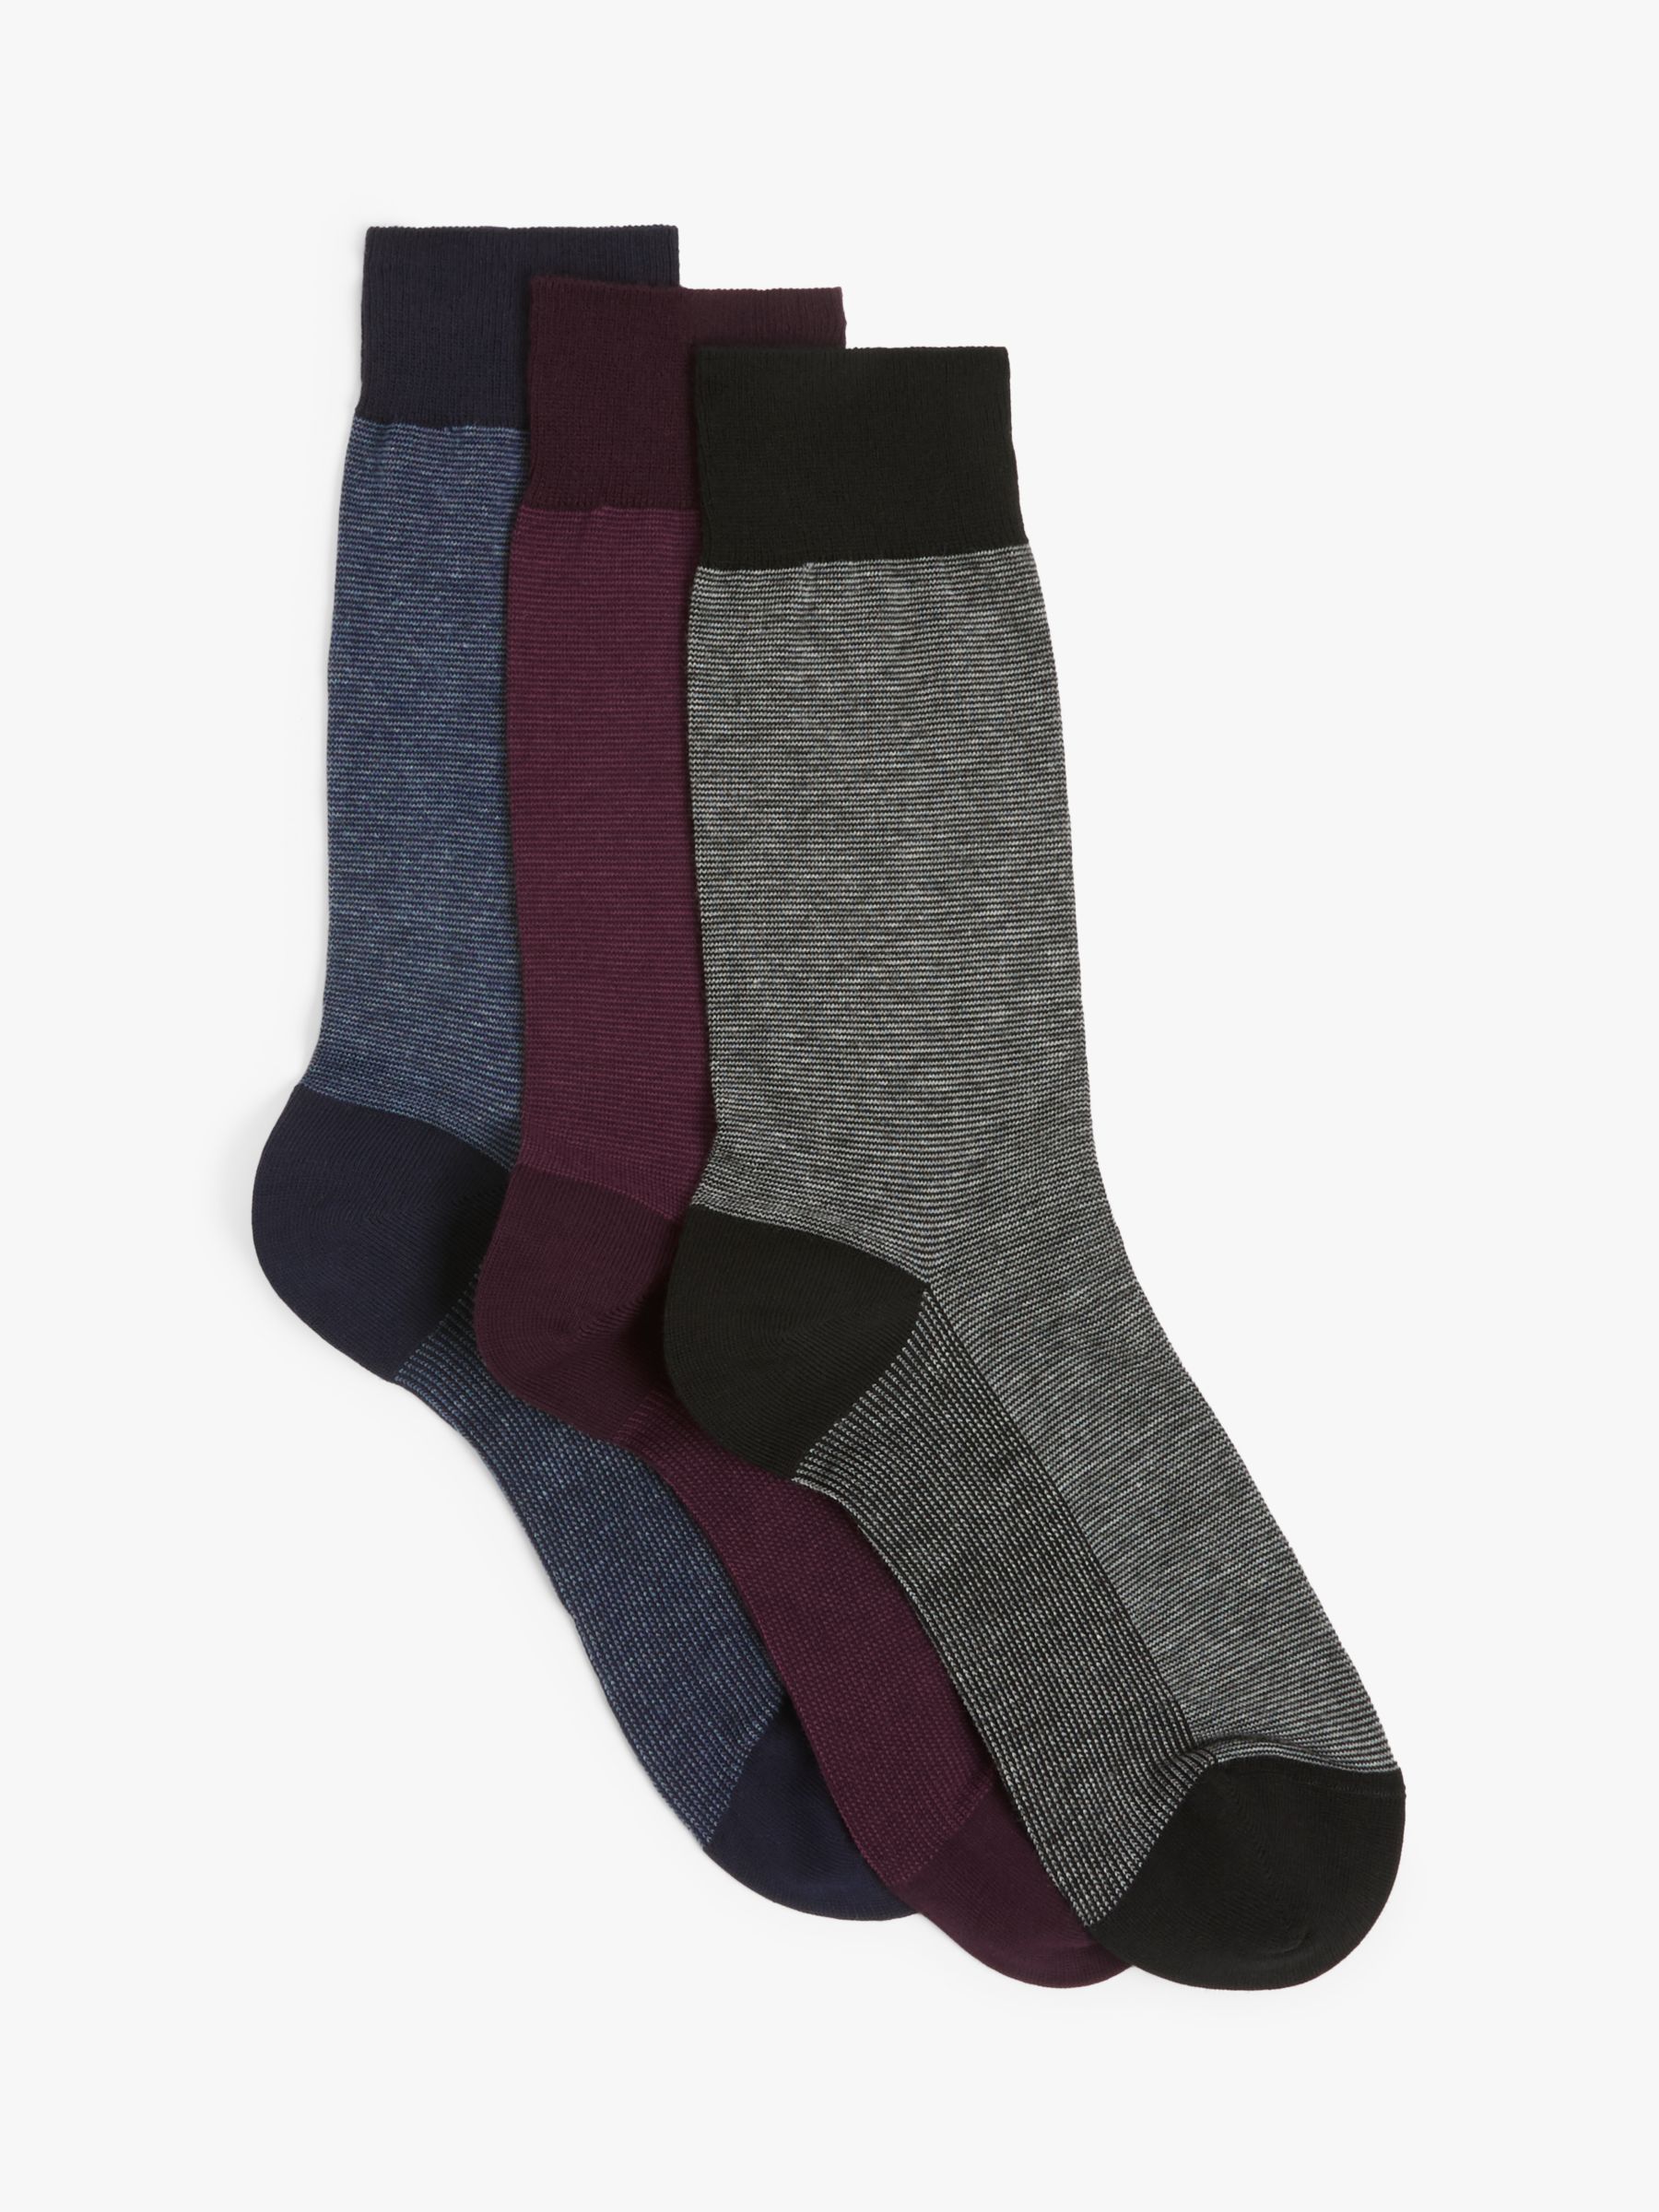 John Lewis Made in Italy Cotton Stripe Men's Socks, Pack of 3, Multi, S